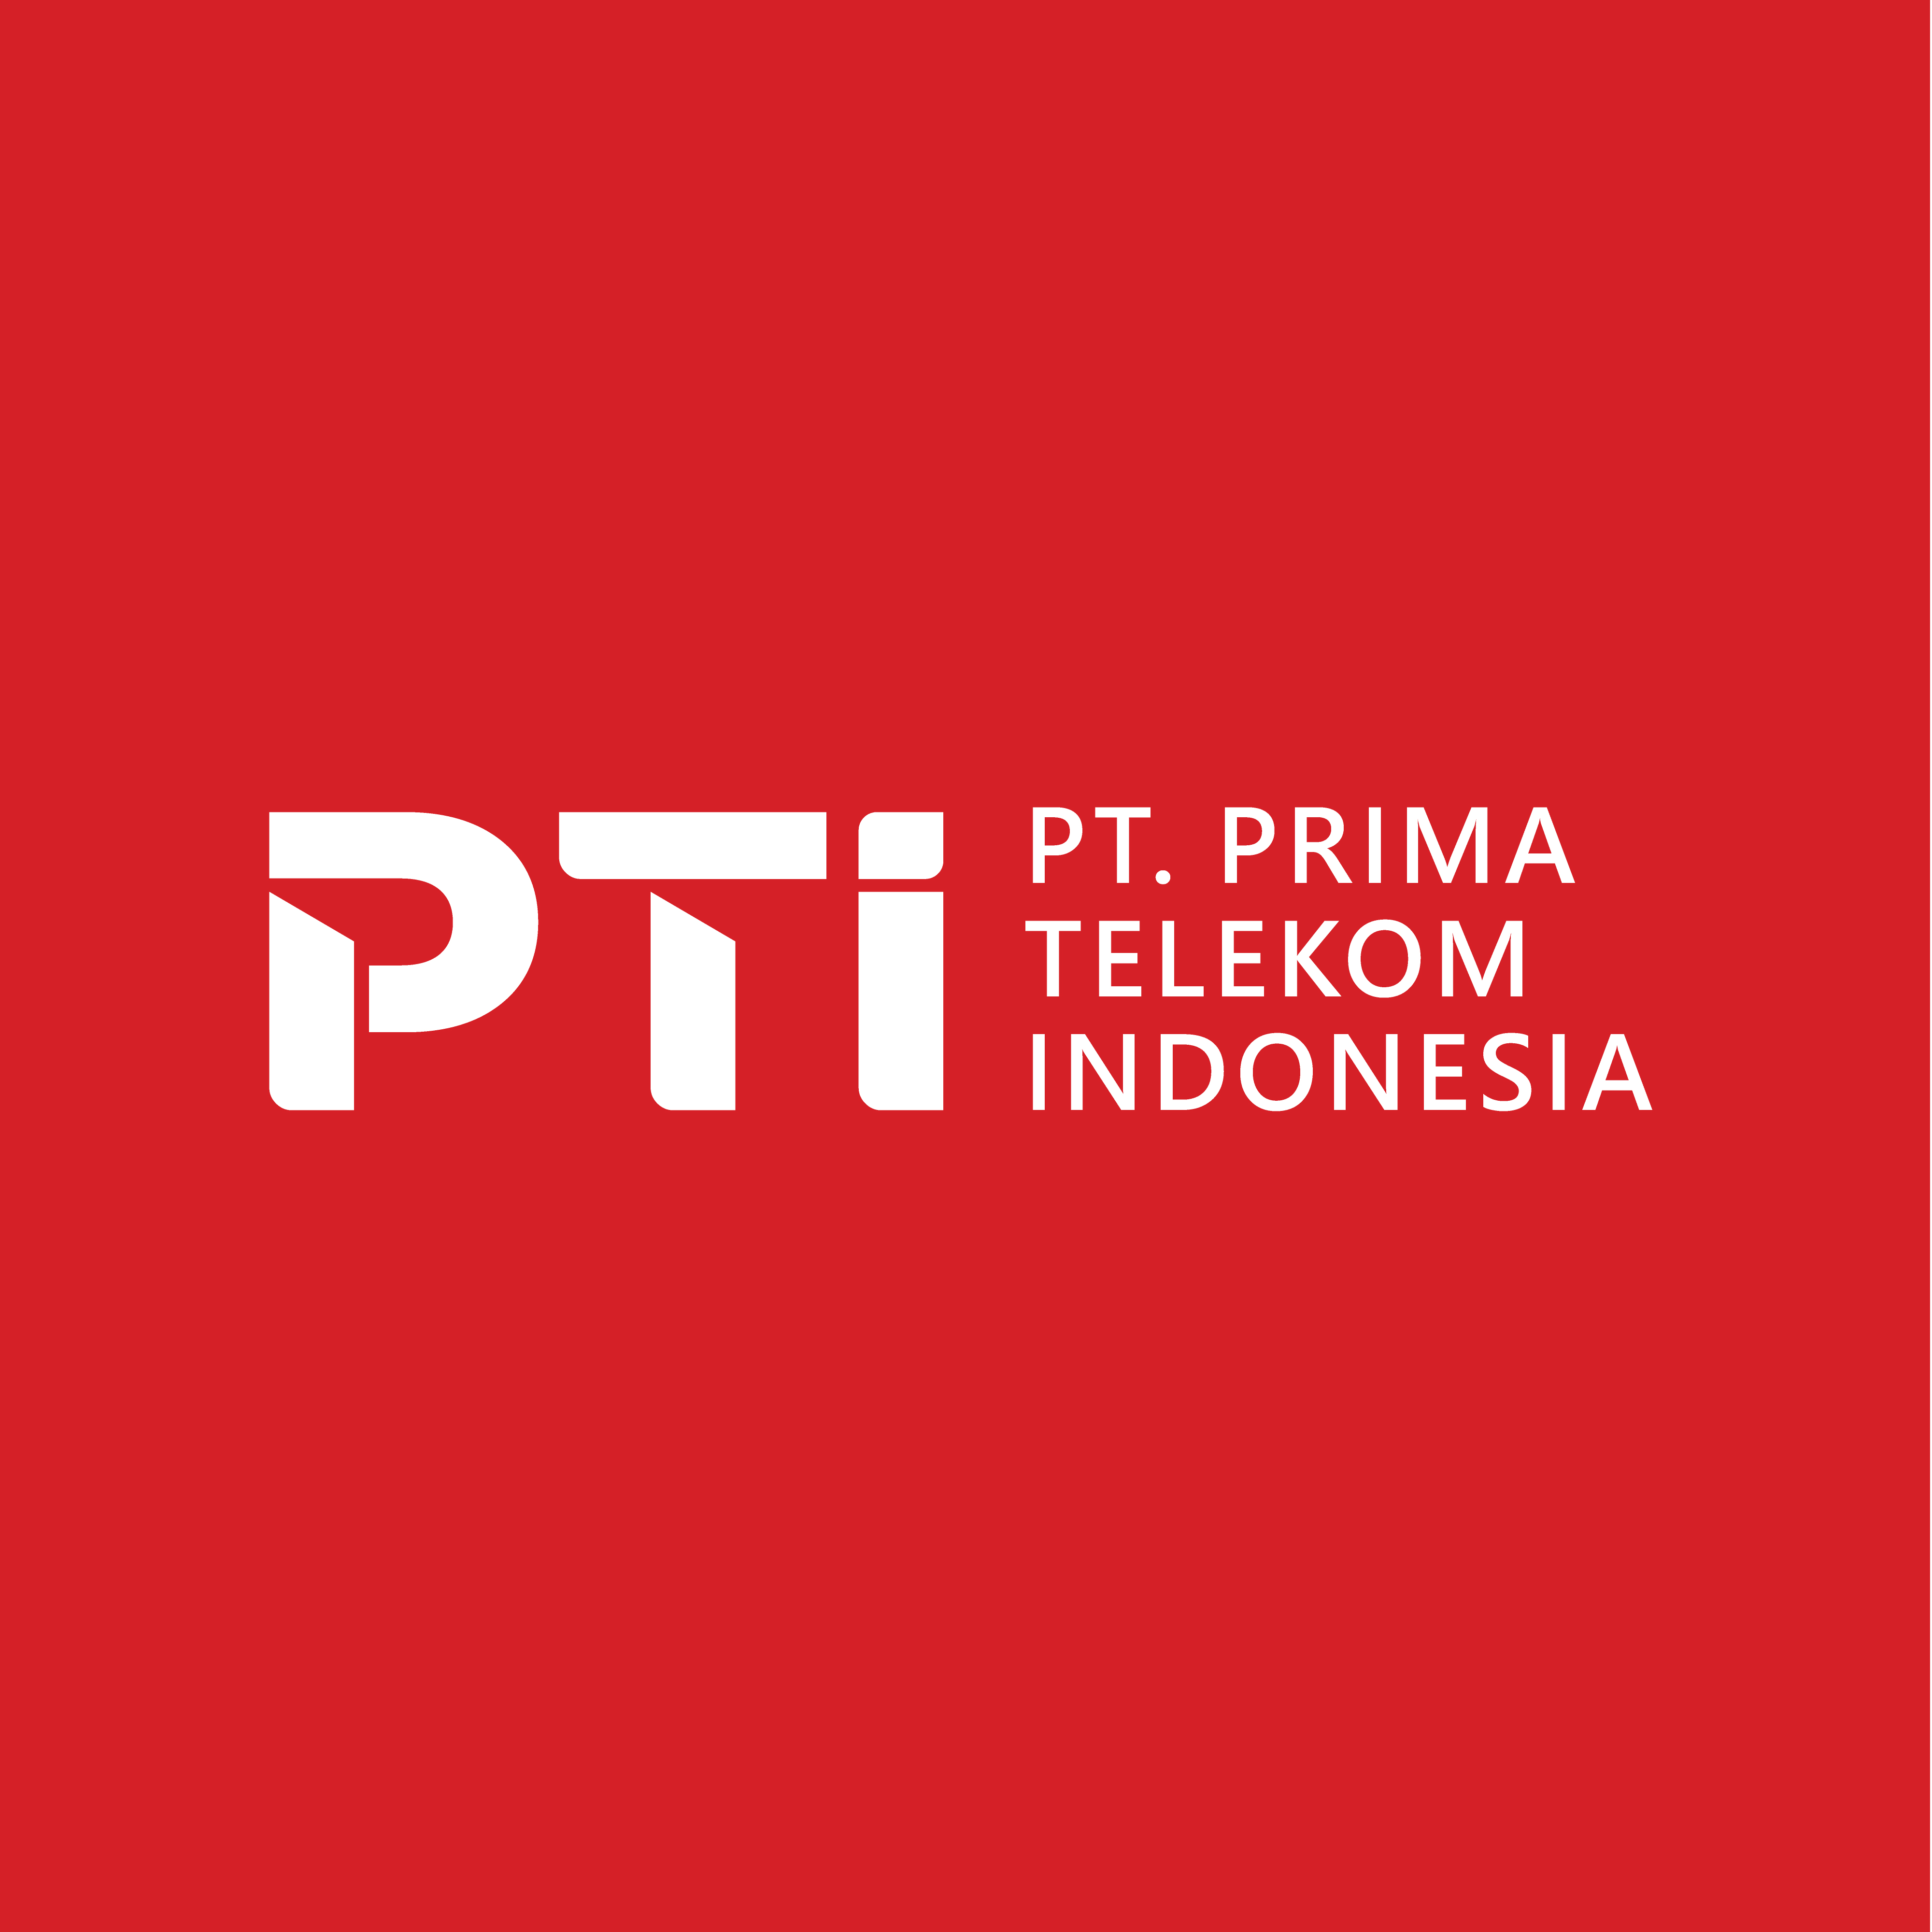 PT. PRIMA TELEKOM INDONESIA